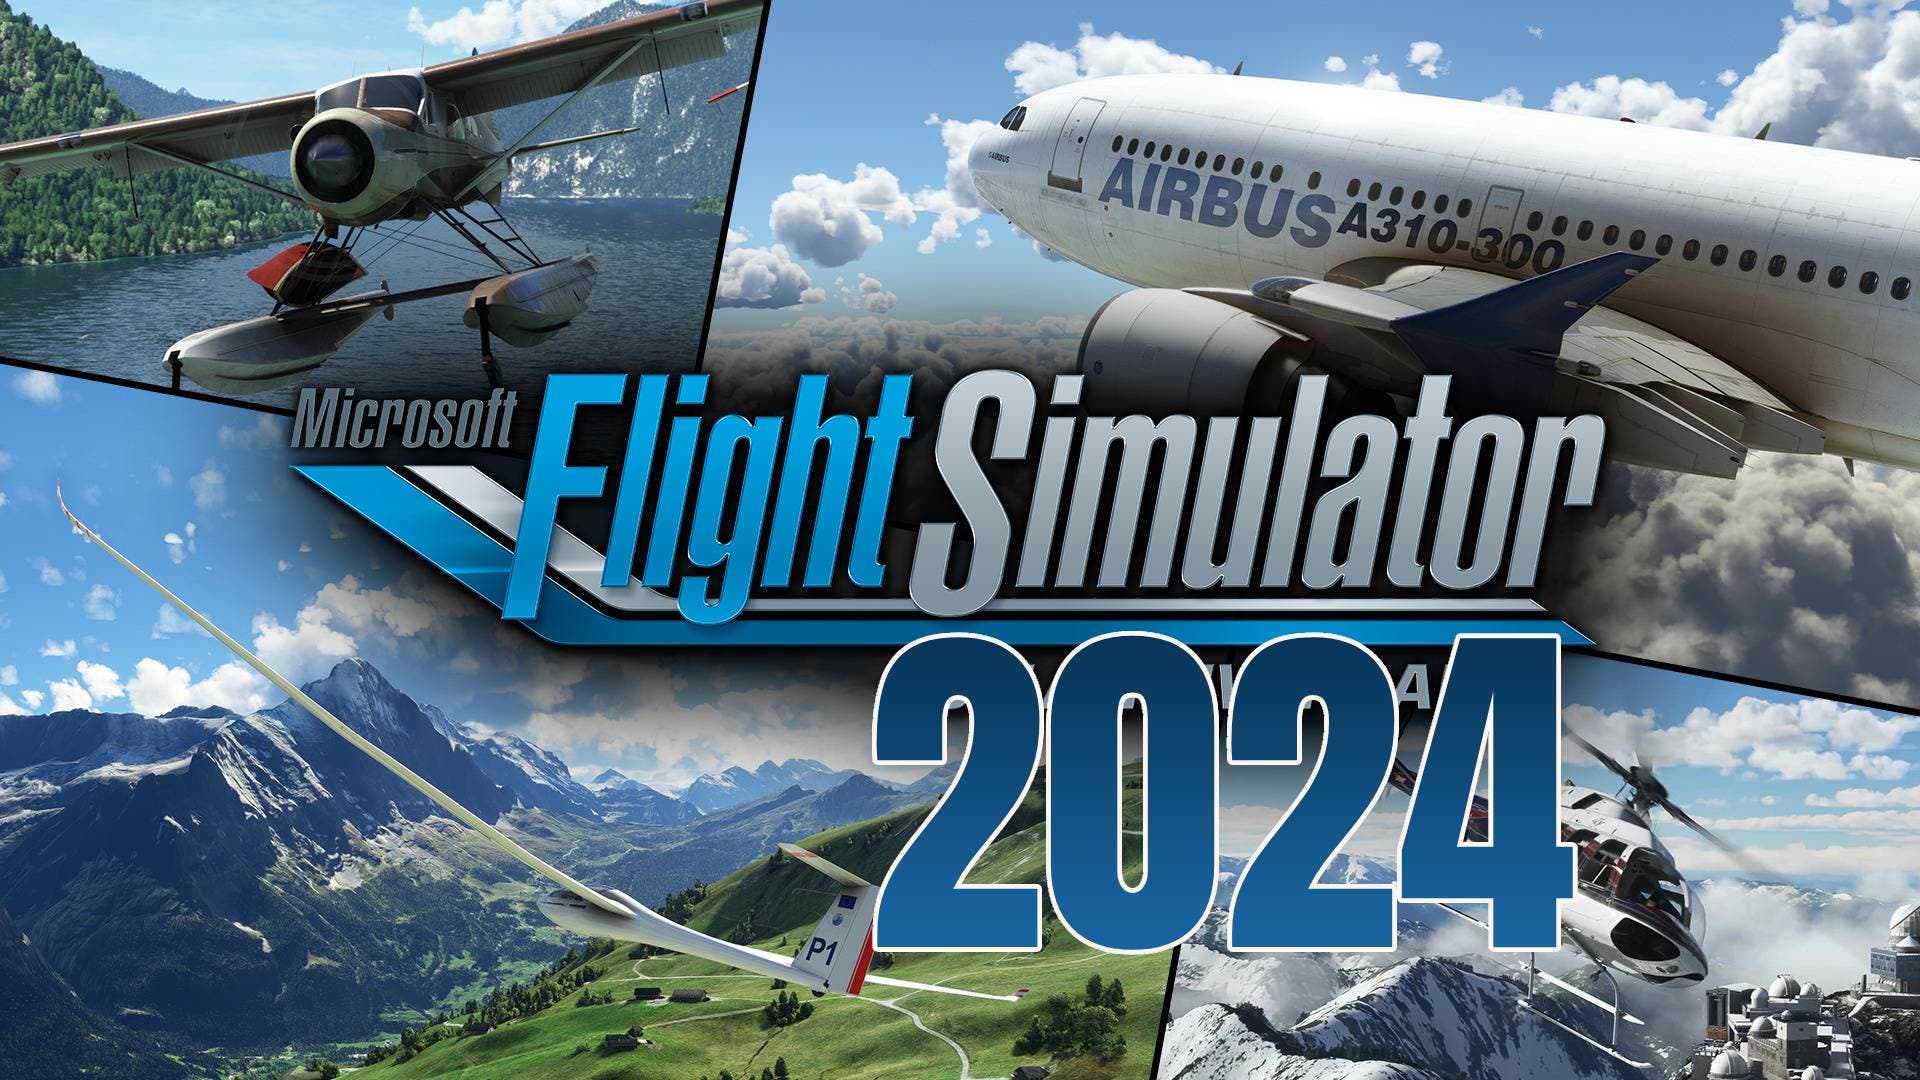 Sorpresón! Microsoft Flight Simulator 2024 es real y lo tendremos